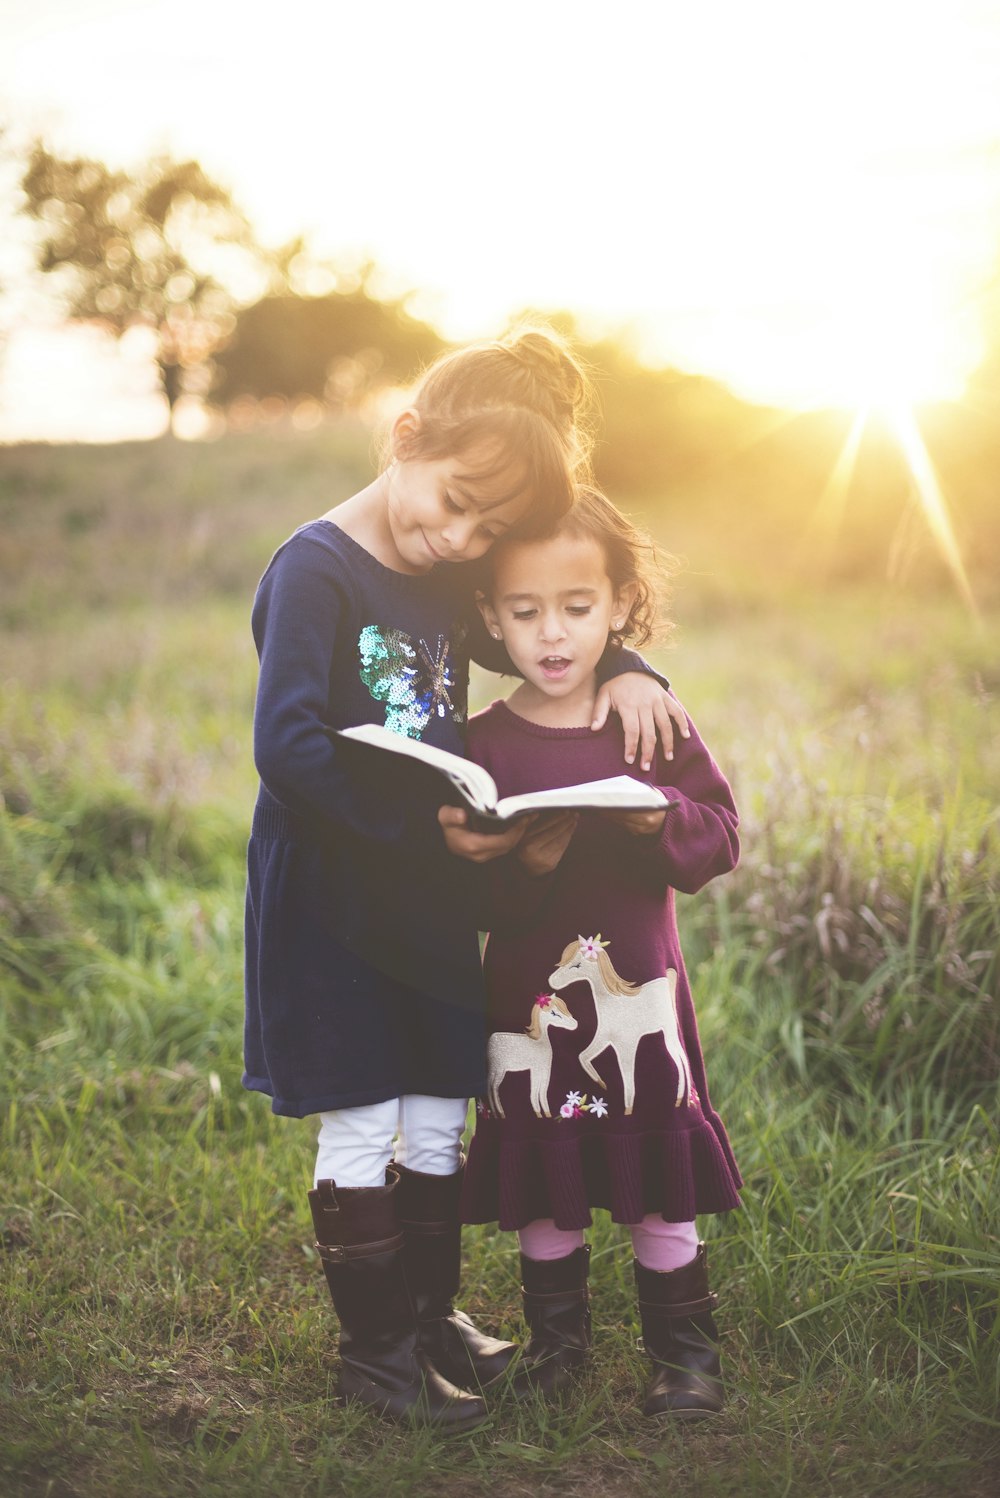 Die linke Hand des Mädchens wickelt sich um ein Kleinkind, während es während der goldenen Stunde ein Buch liest